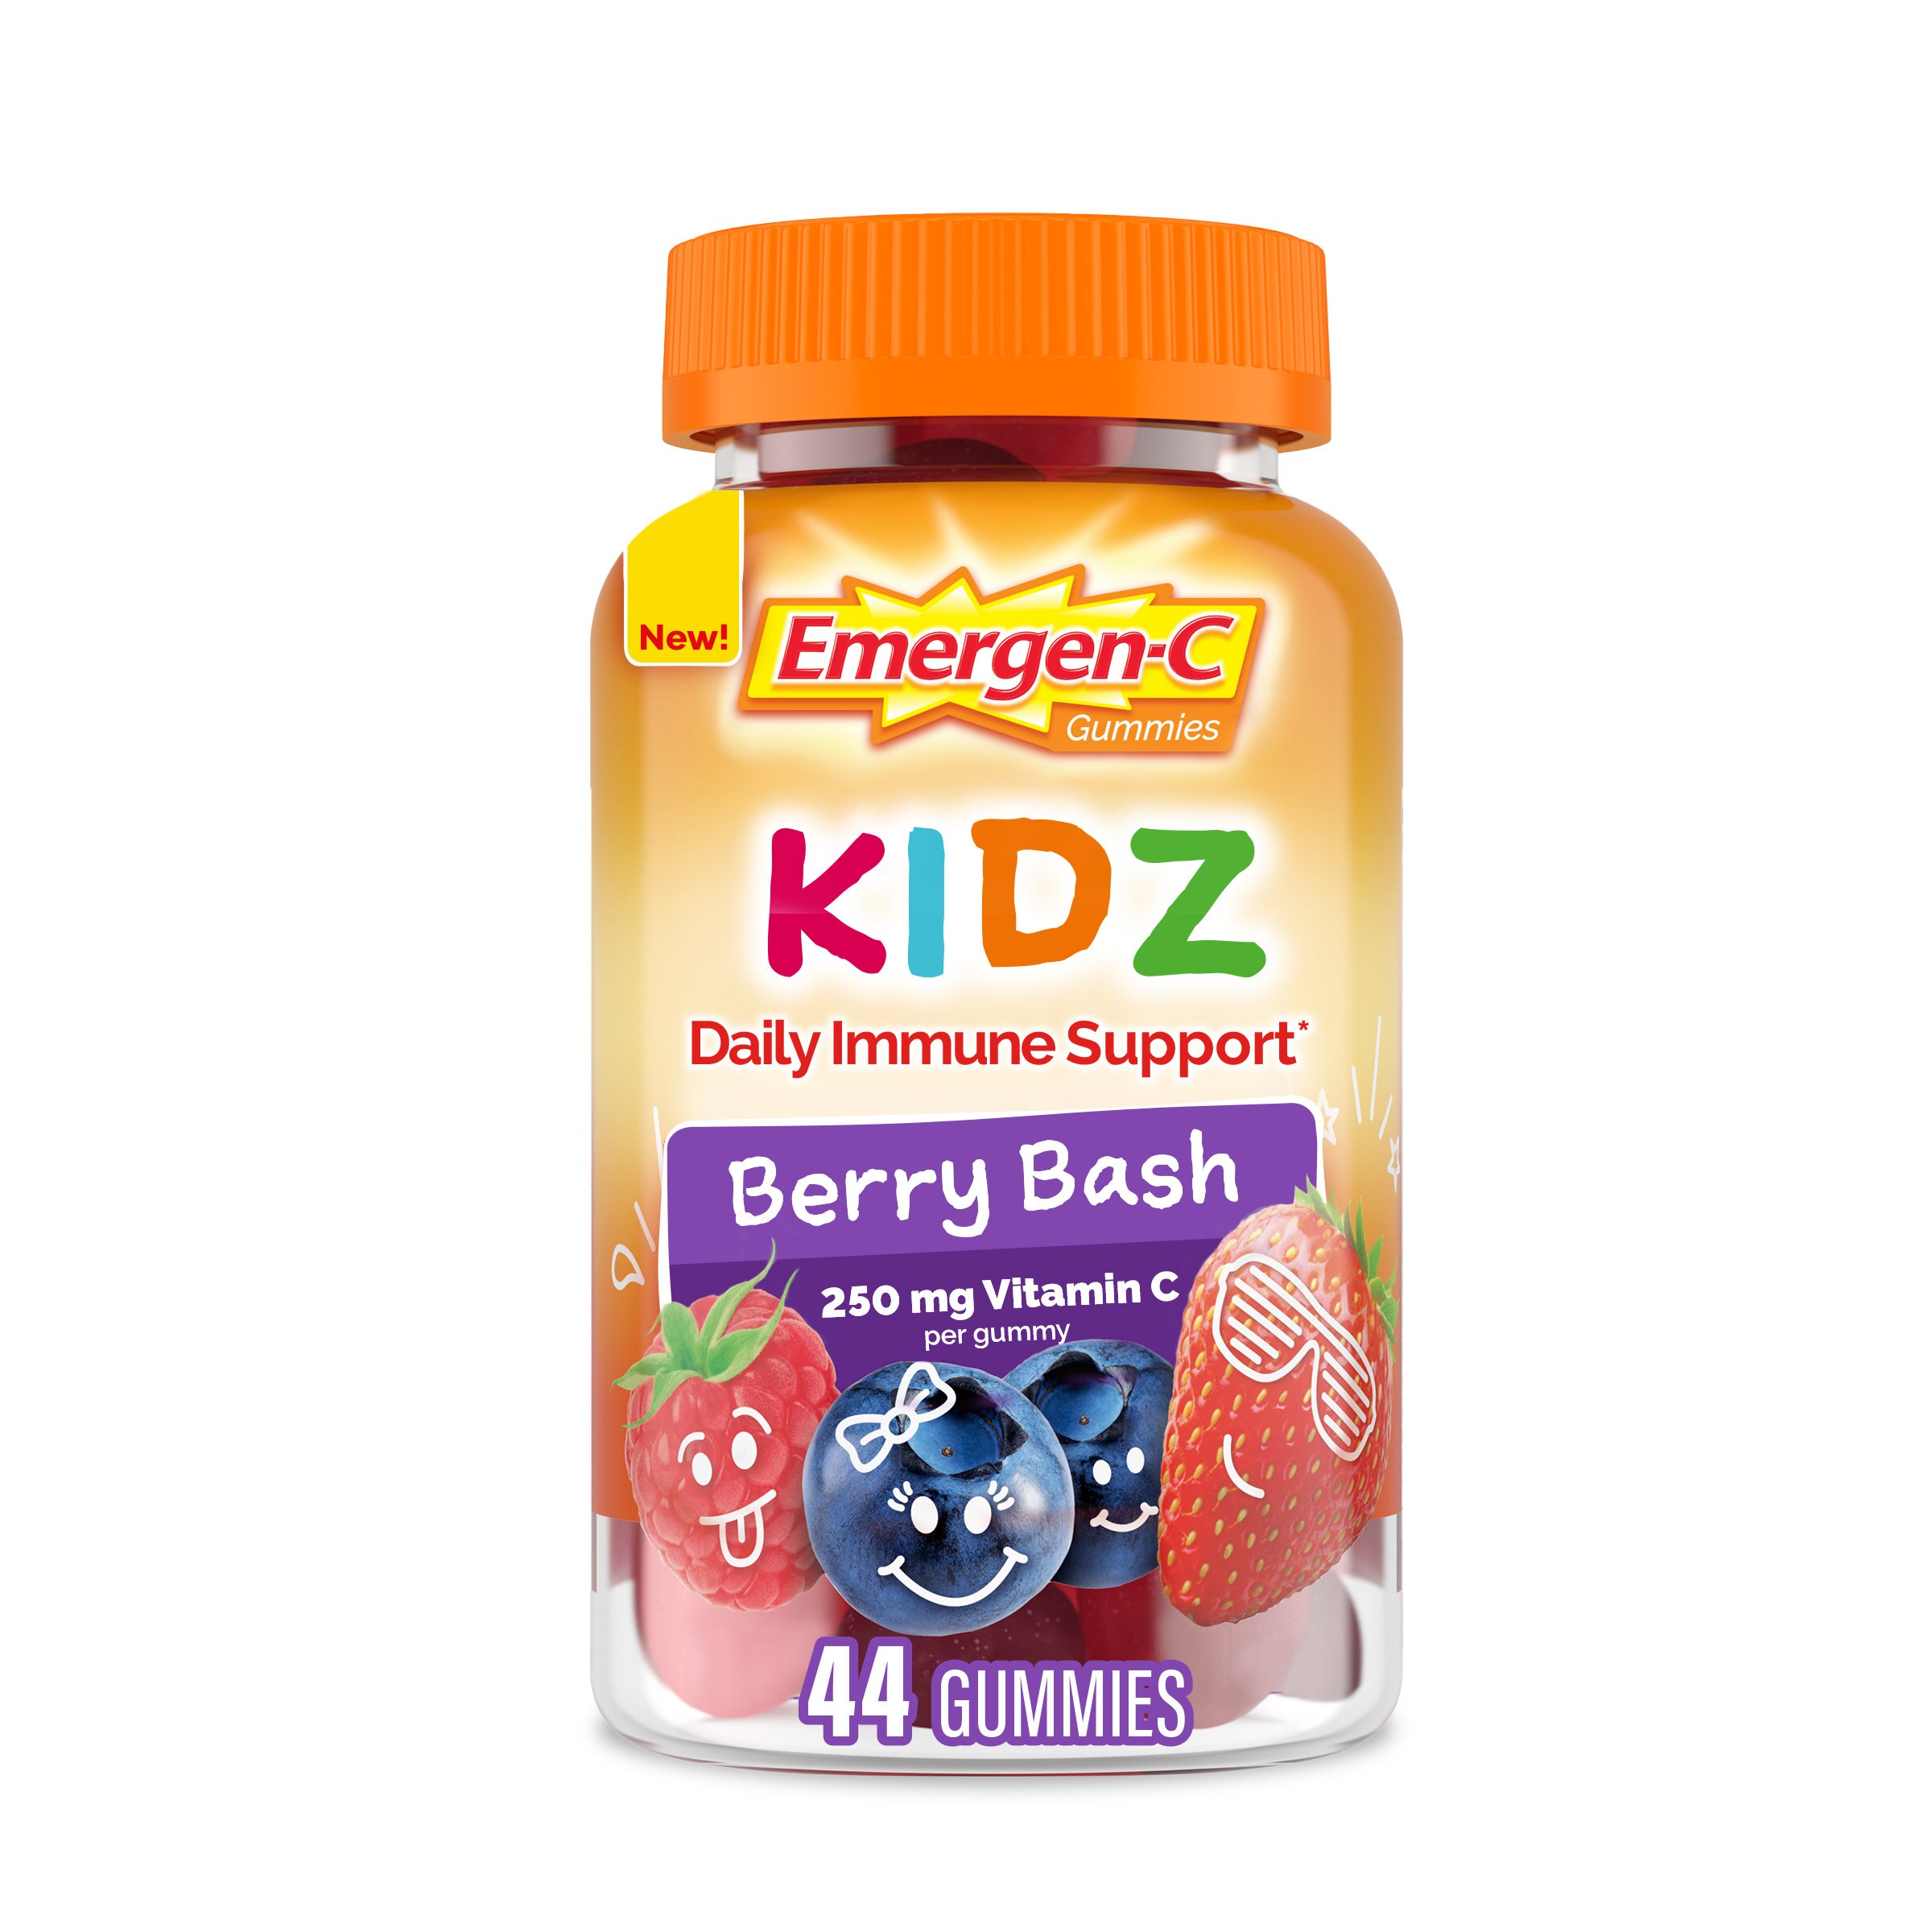 Emergen-C Kidz Immune Support  Dietary Supplements